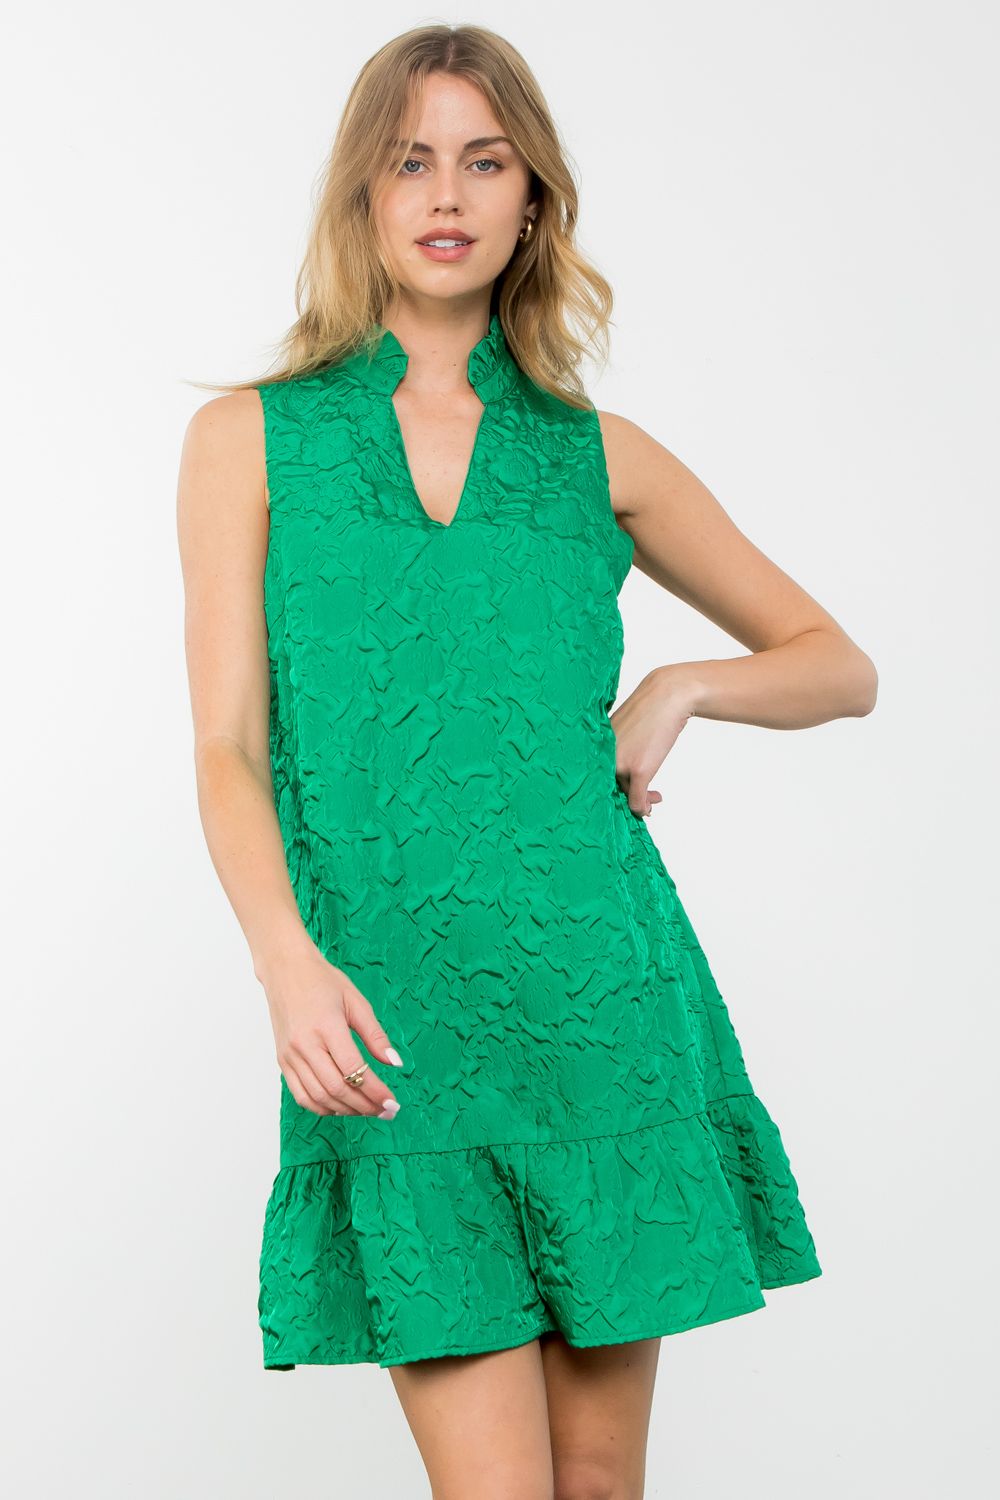 Geraldine Green Sleevless Textured Dress